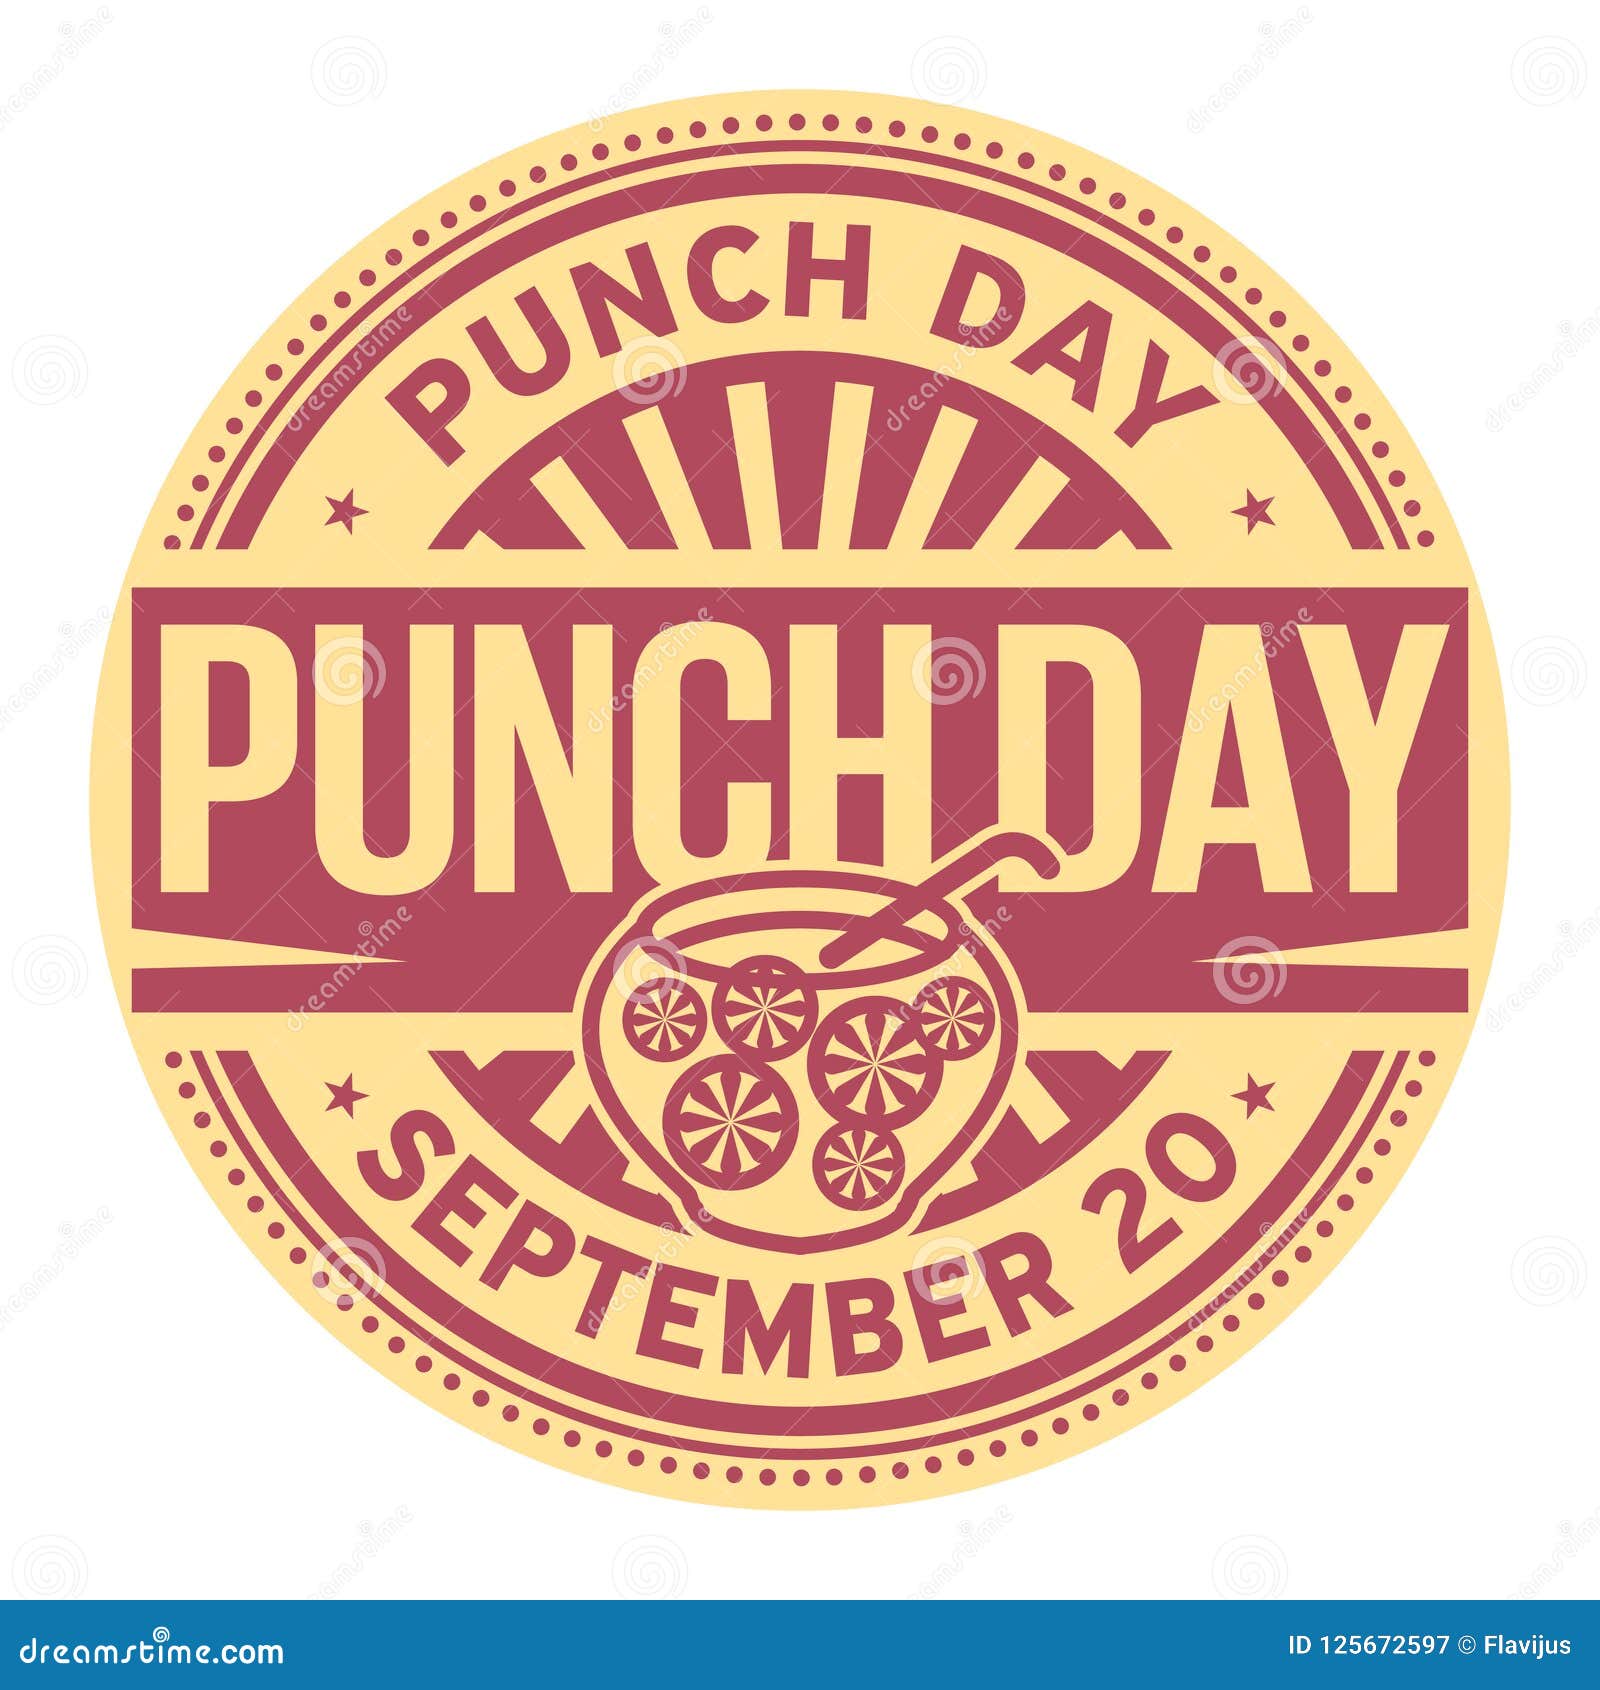 punch day, september 20